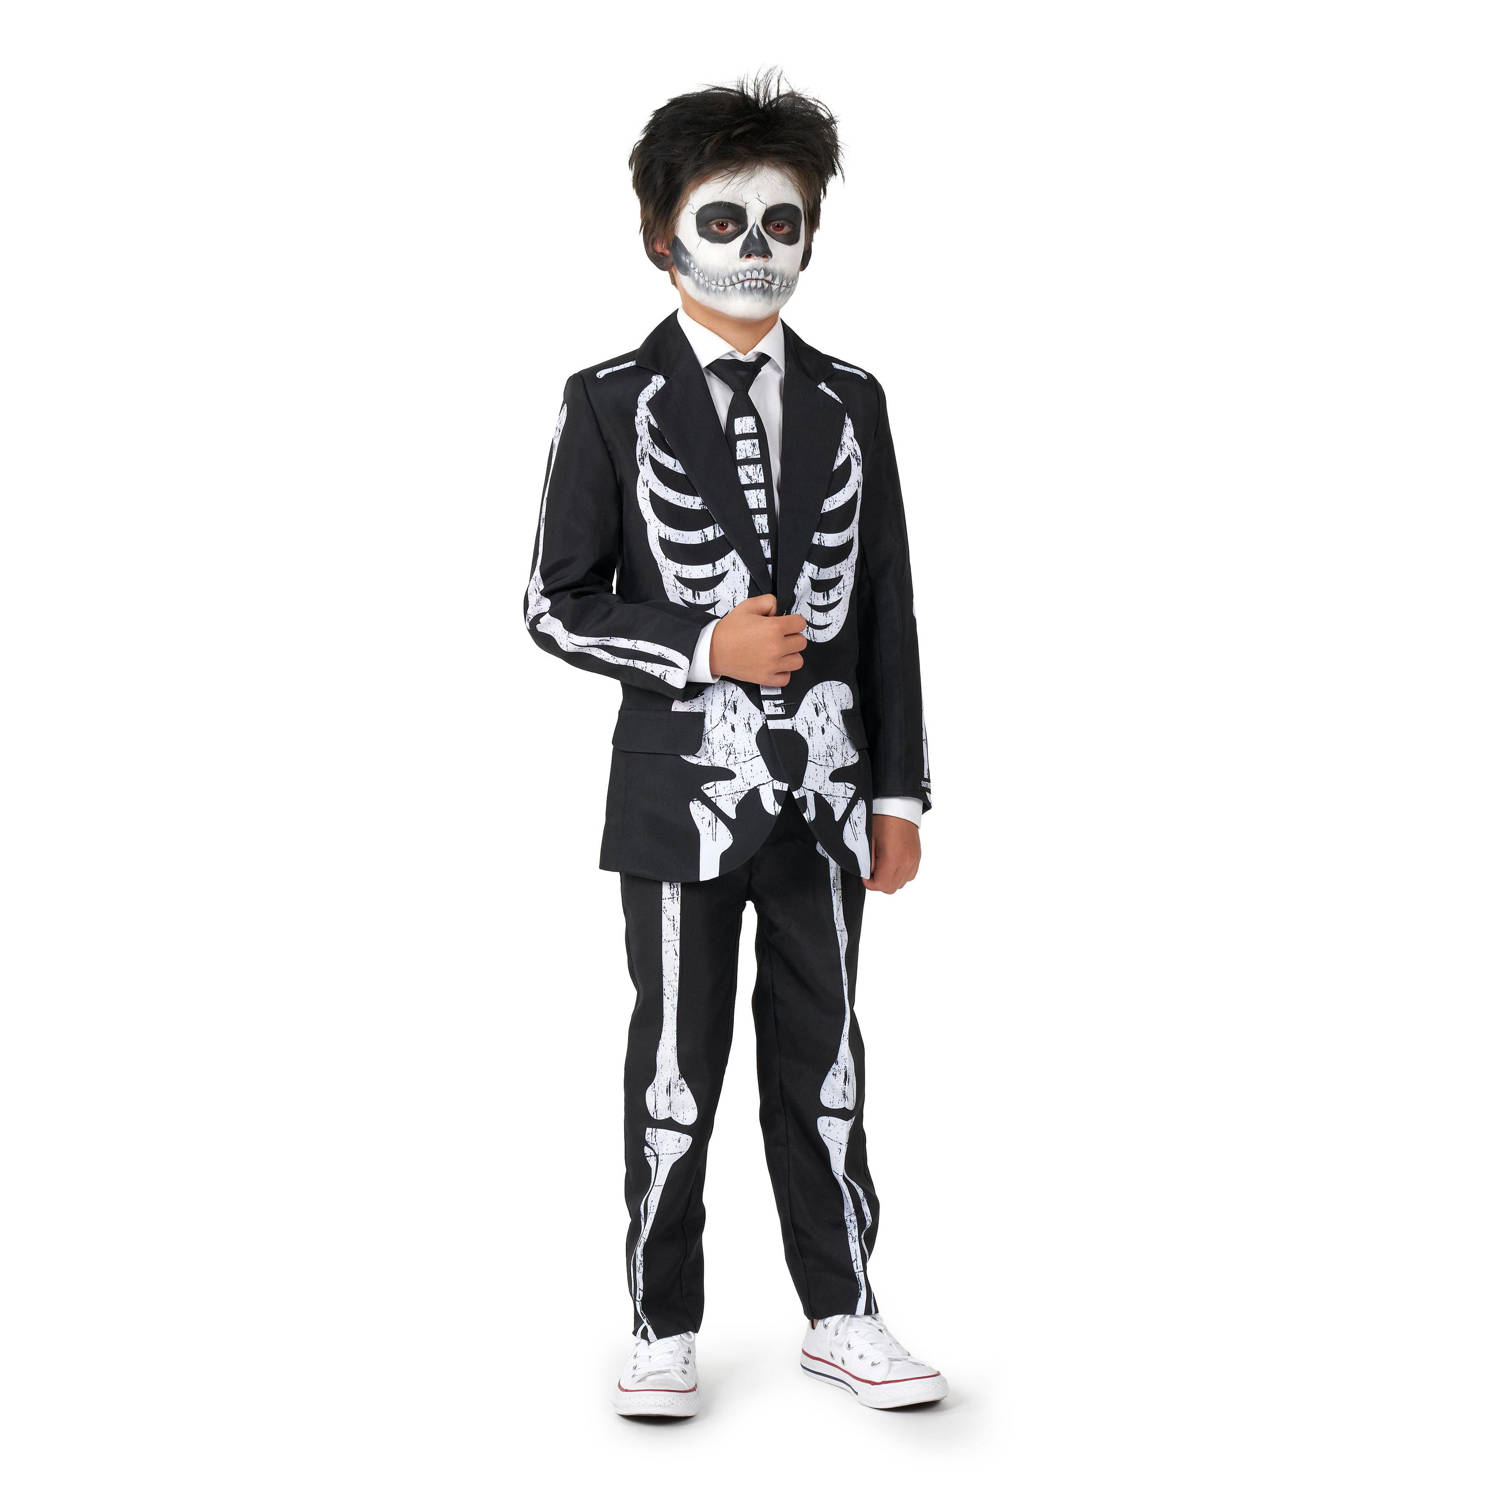 Suitmeister kostuum Skeleton Grunge zwart wit